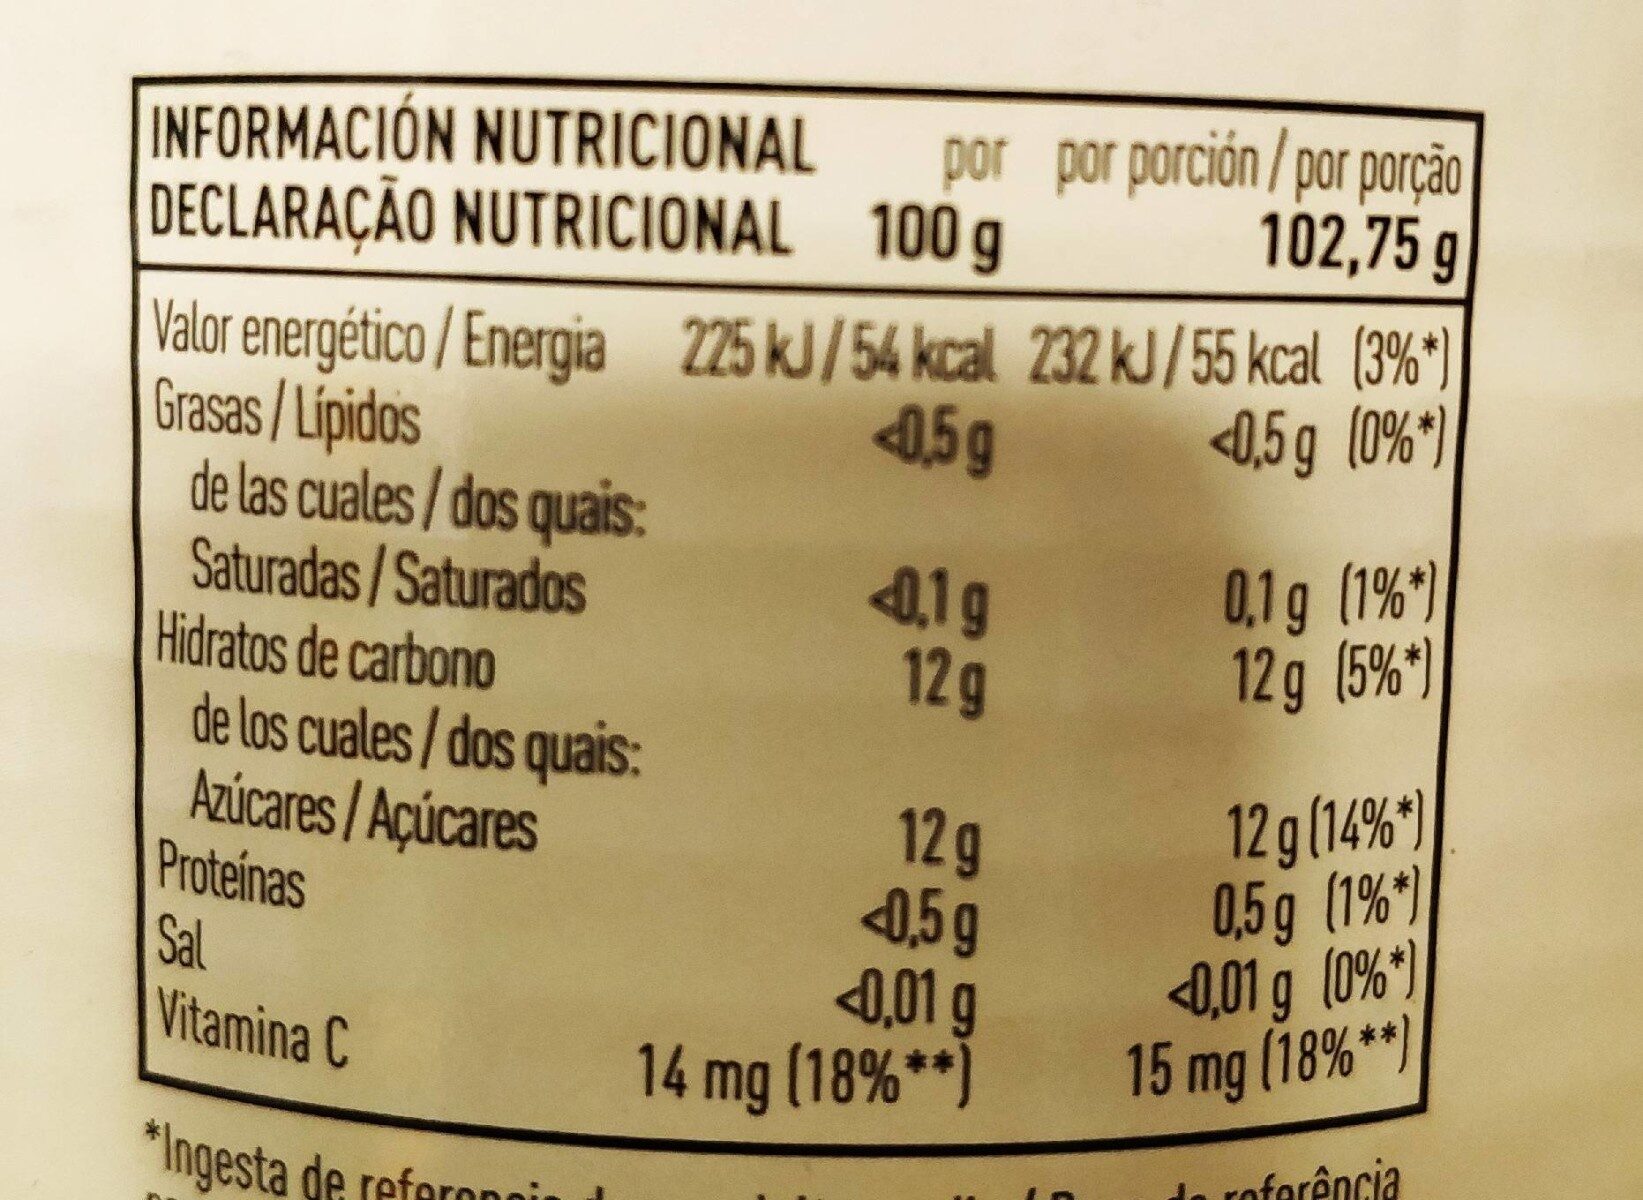 Piña en su jugo en rodajas lata 493 g - Nutrition facts - fr